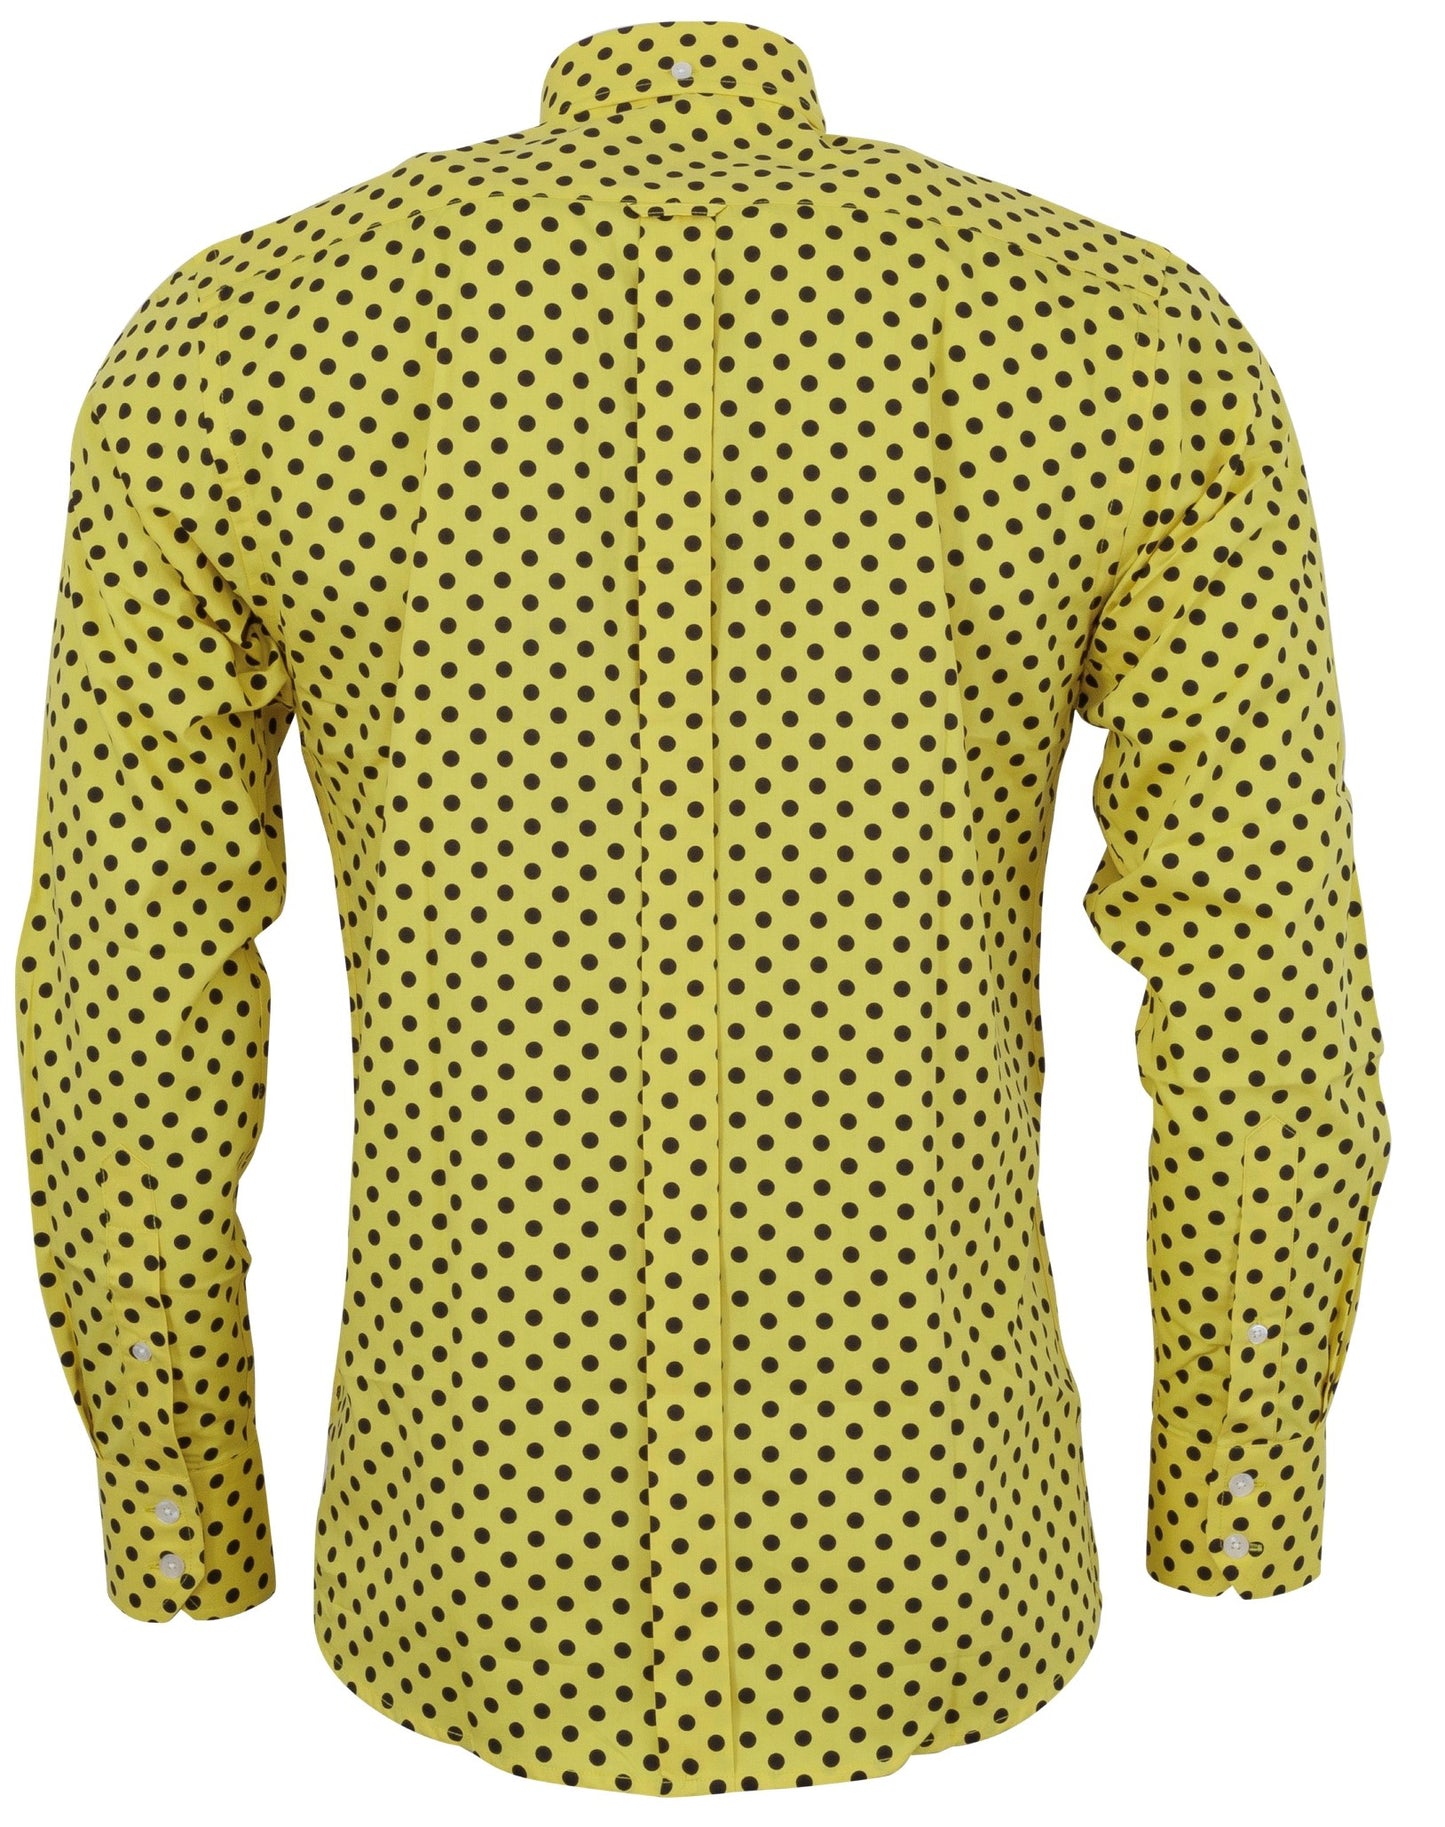 Relco Camisas de diseño vintage Mod clásico para hombre con lunares negros y mostaza